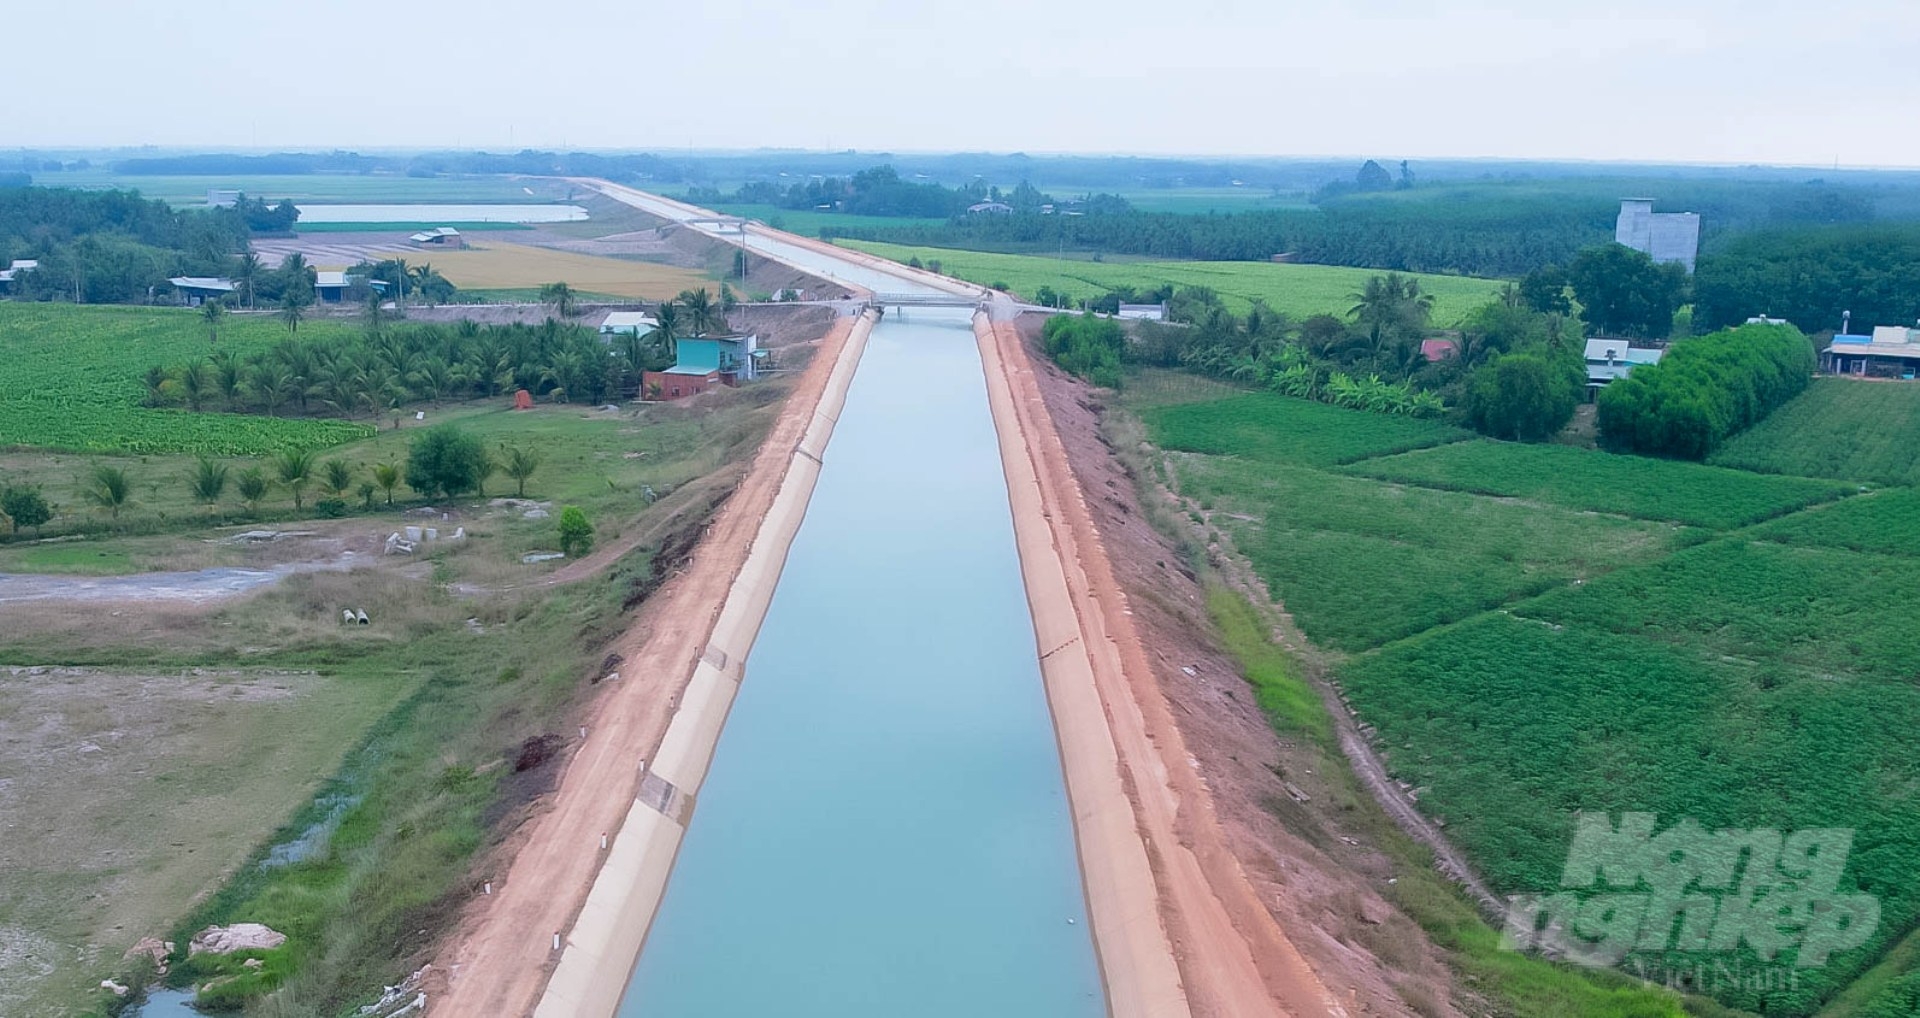 Tây Ninh có hệ thống kênh thủy lợi dày đặc, chỉn chu và đáp ứng chủ động cho hầu hết đất canh tác trên địa bàn tỉnh. Ảnh: Lê Bình.